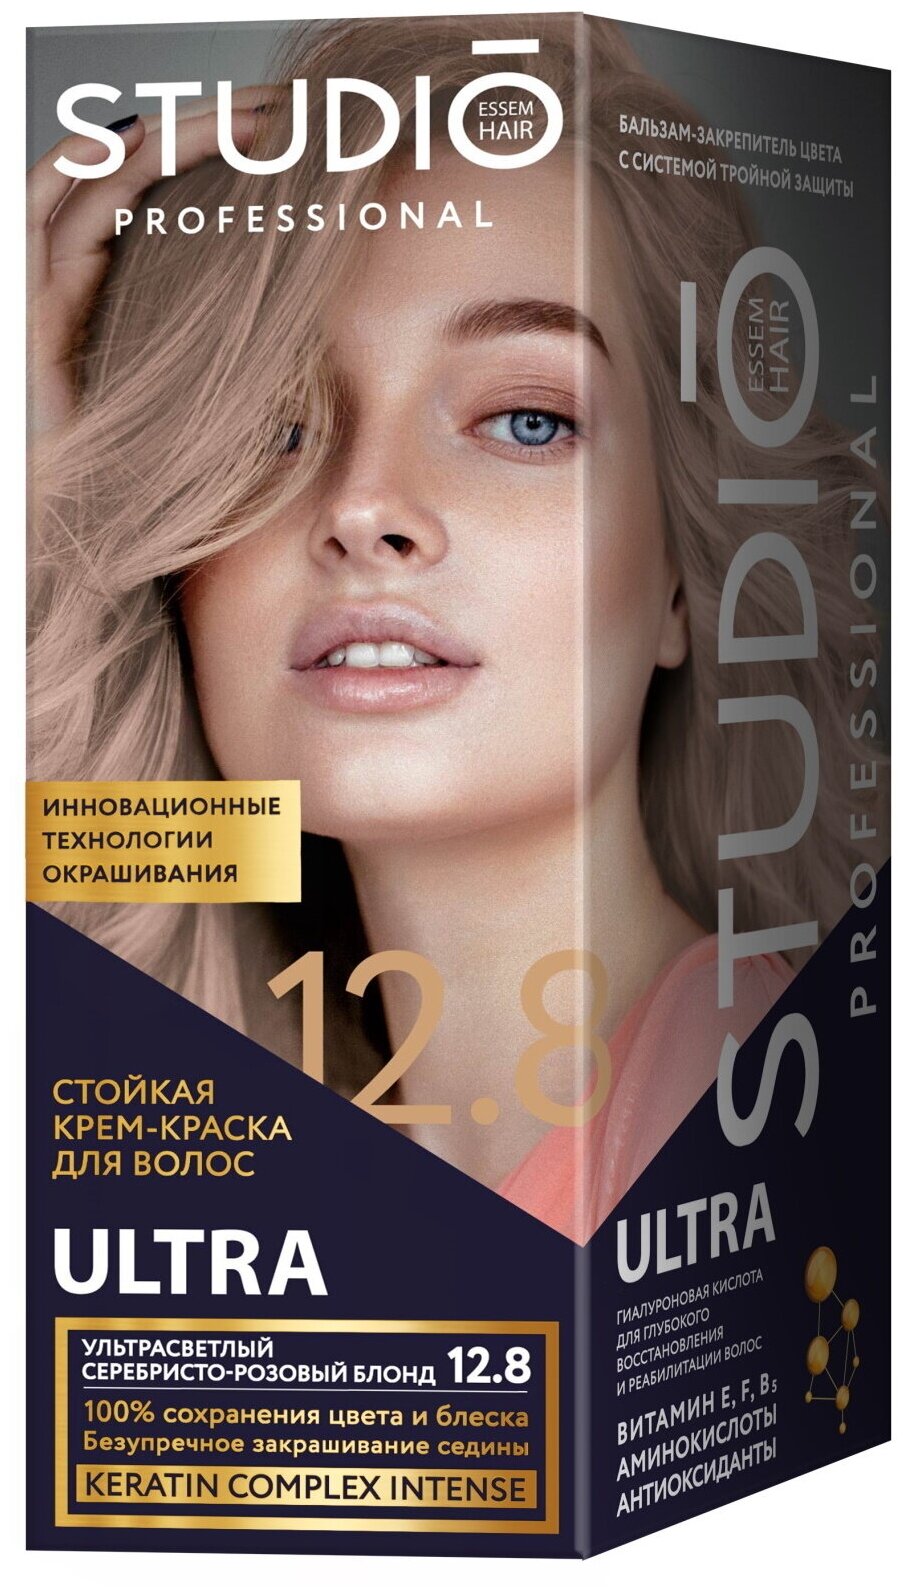 Комплект ULTRA для окрашивания волос STUDIO PROFESSIONAL 12.8 ультрасветлый серебристо-розовый блонд 2*50+15 мл